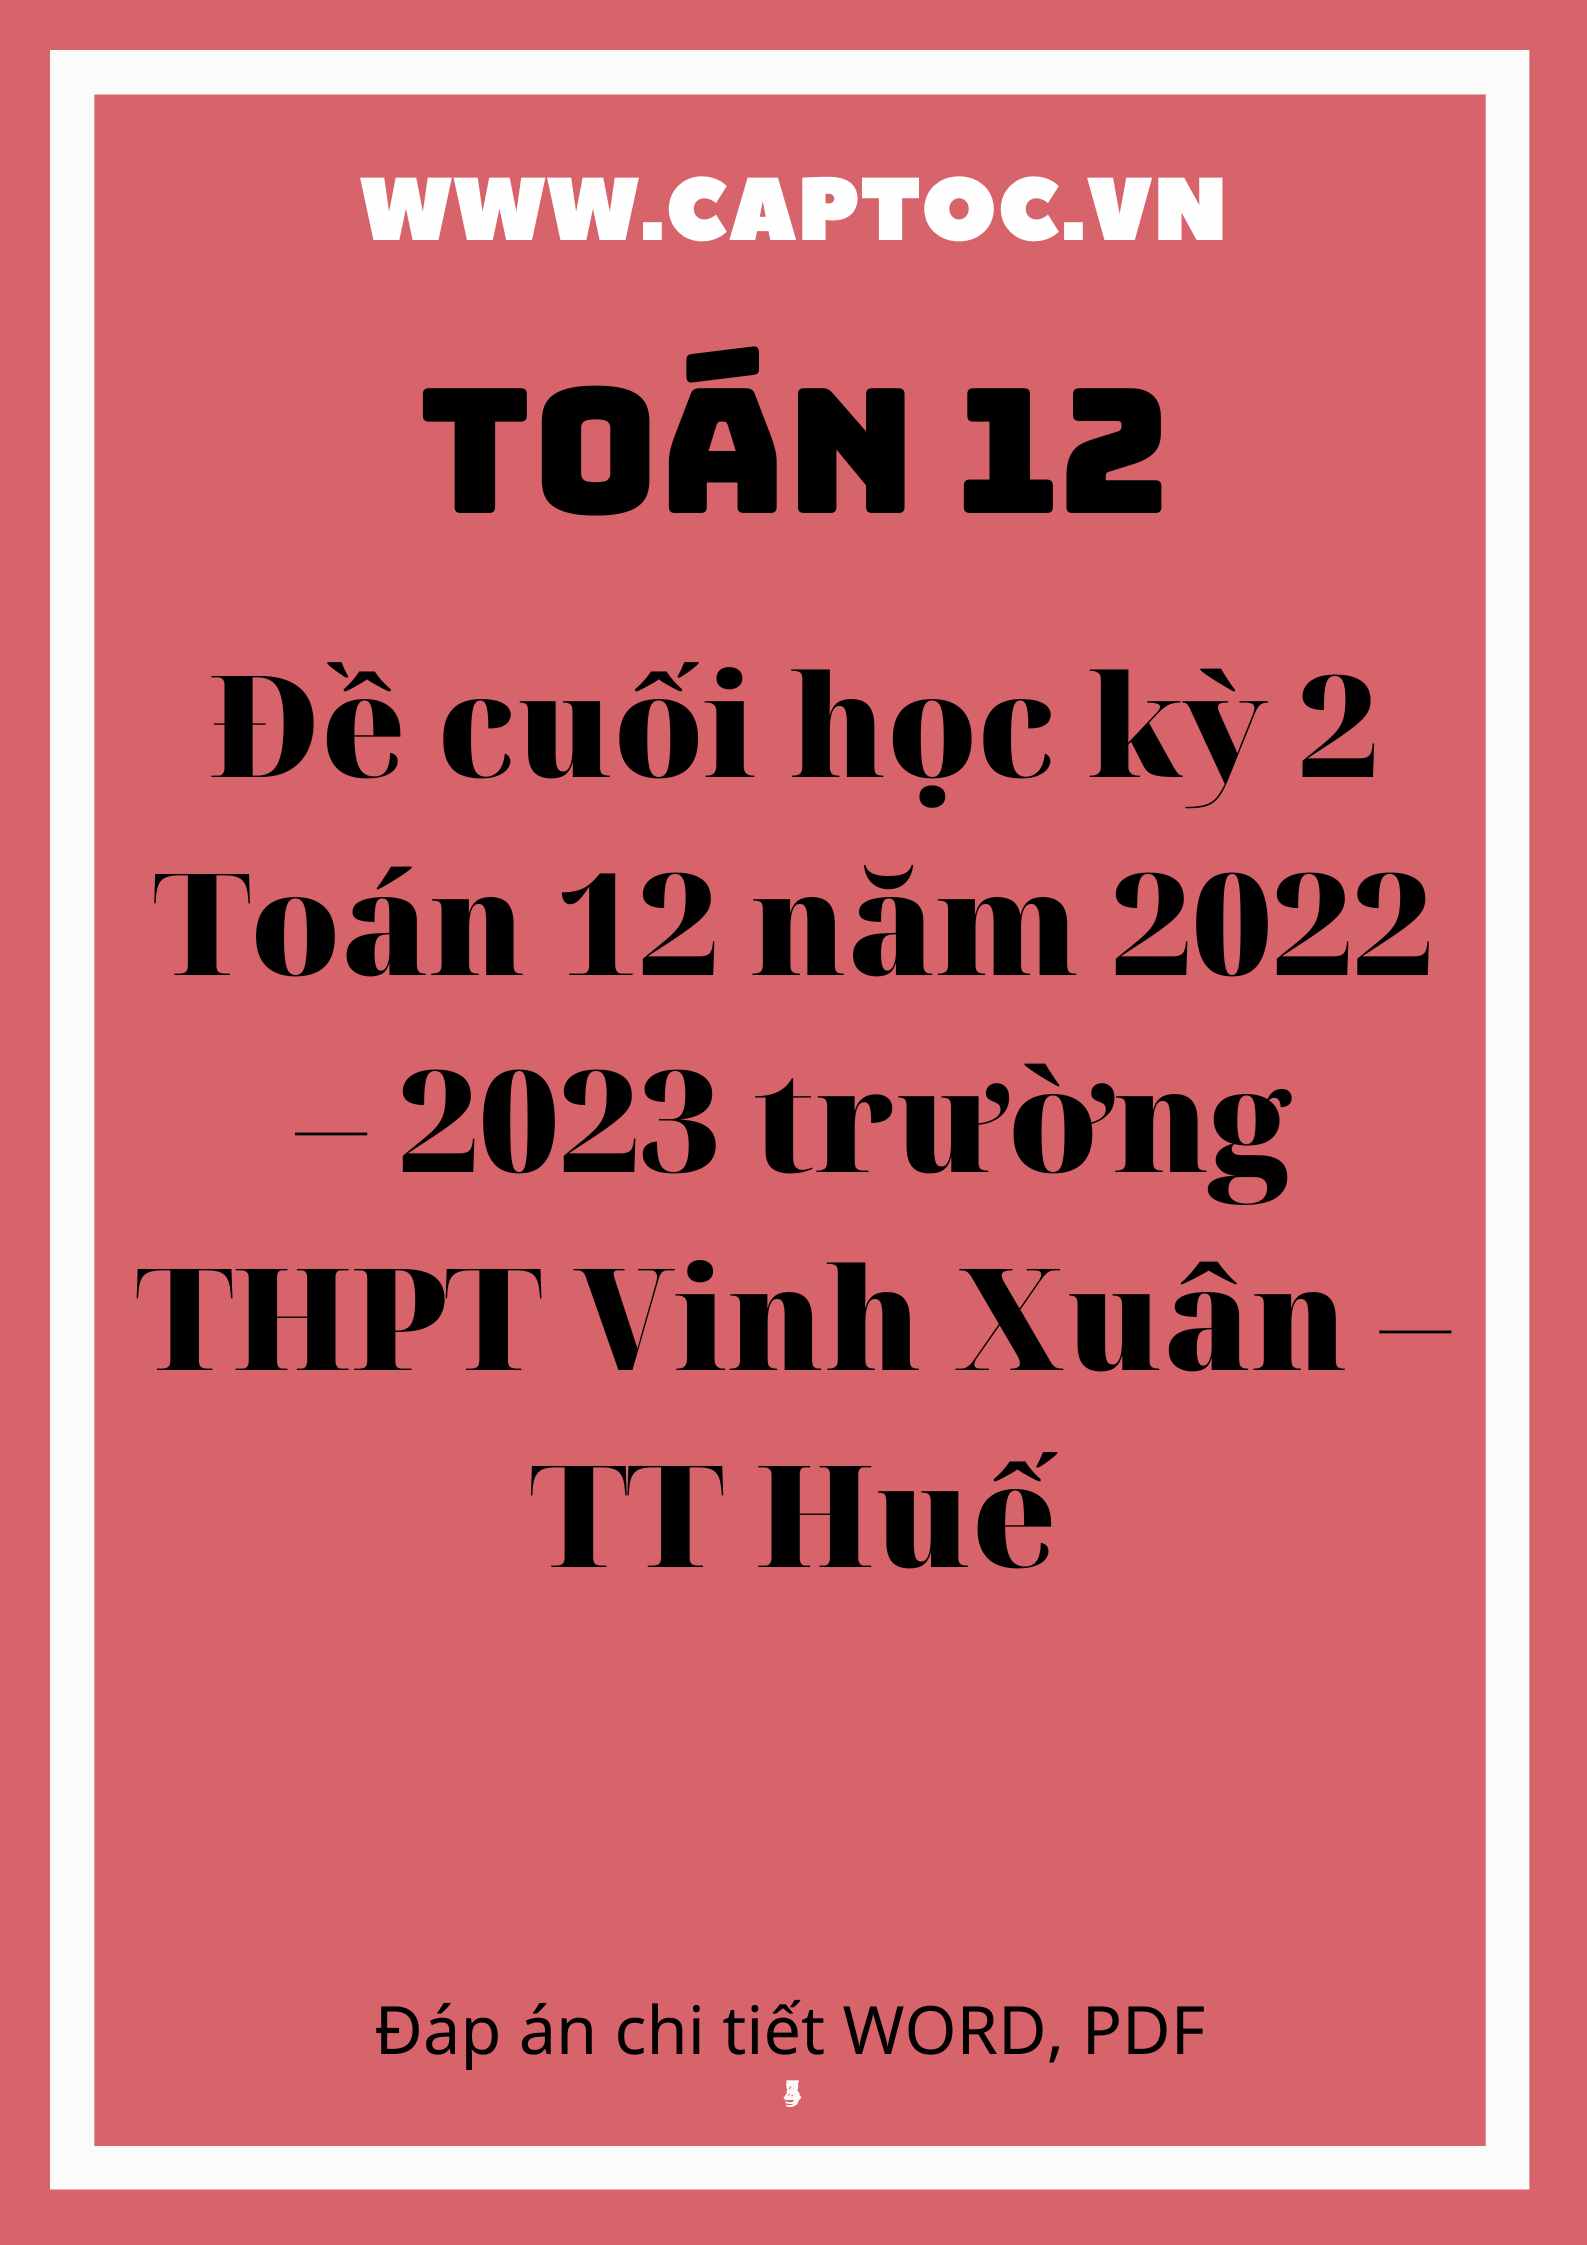 Đề cuối học kỳ 2 Toán 12 năm 2022 – 2023 trường THPT Vinh Xuân – TT Huế